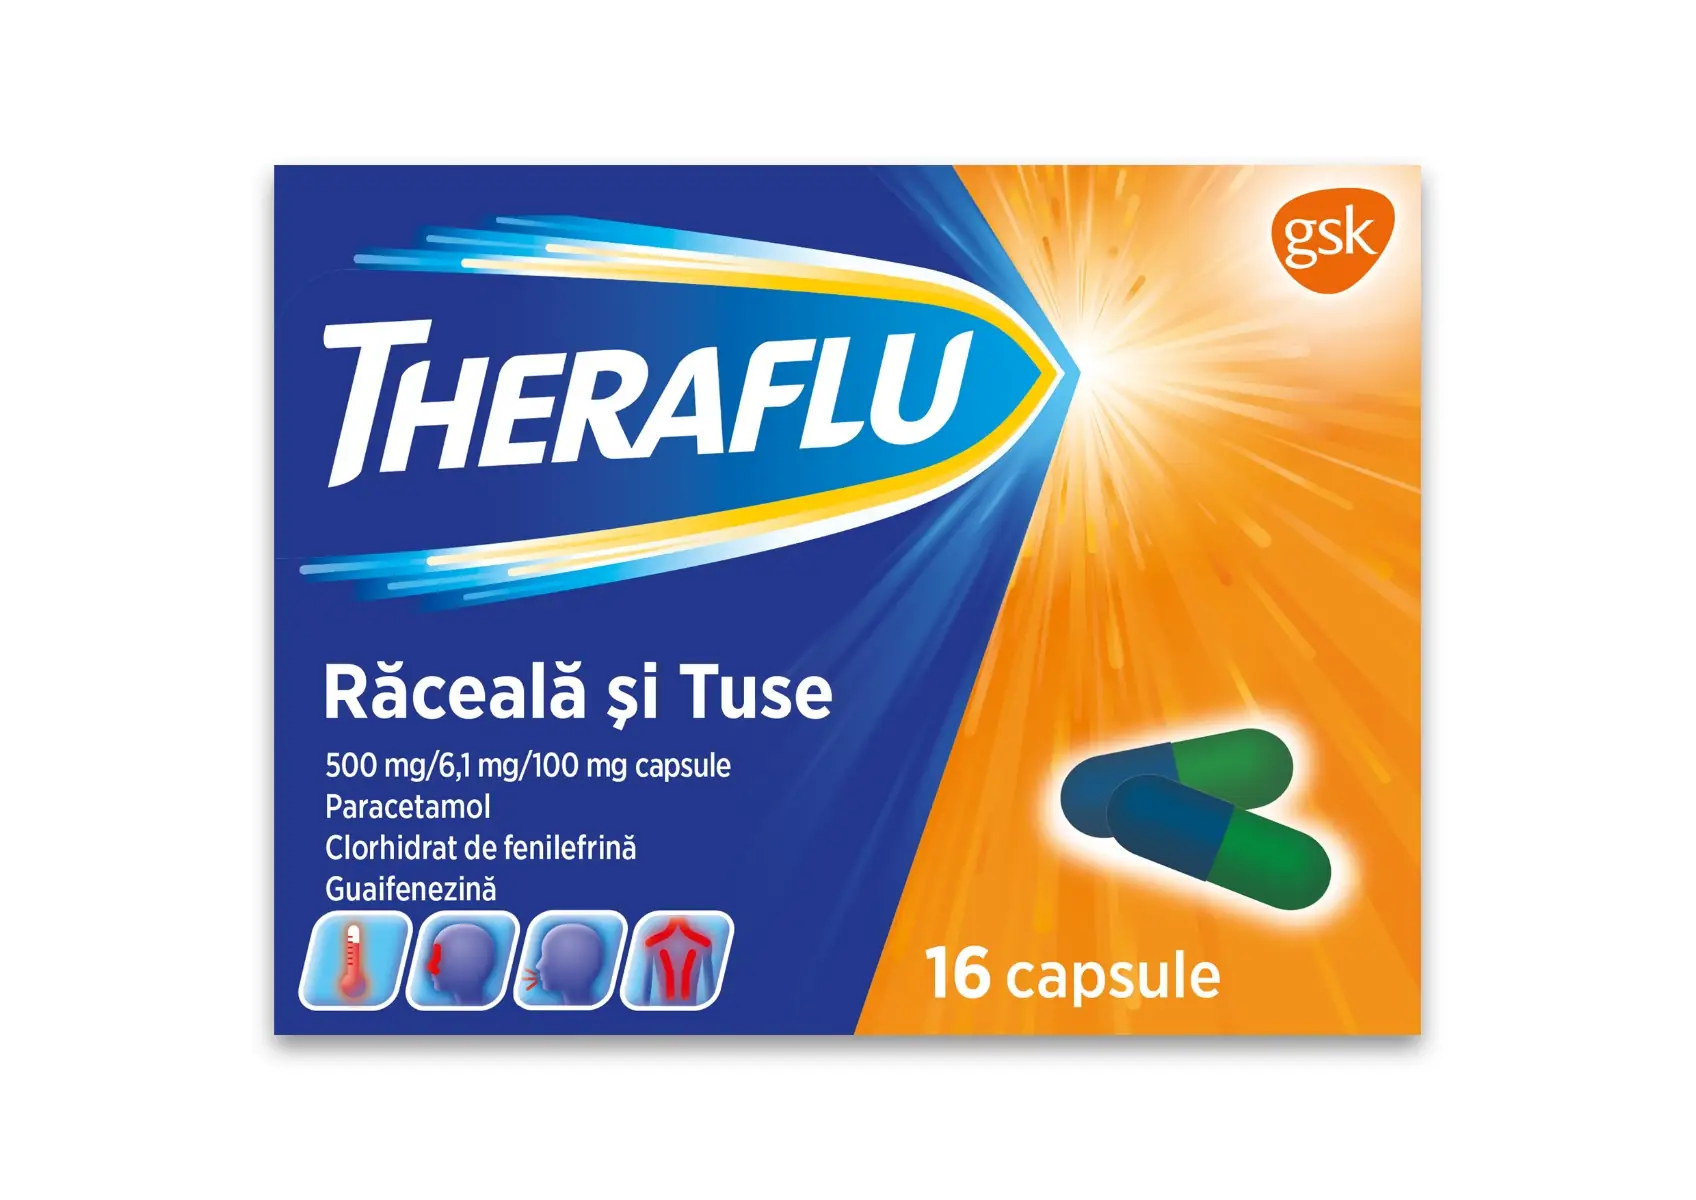 THERAFLU RACEALA SI TUSE 500 mg/6,1 mg/100 mg x 16